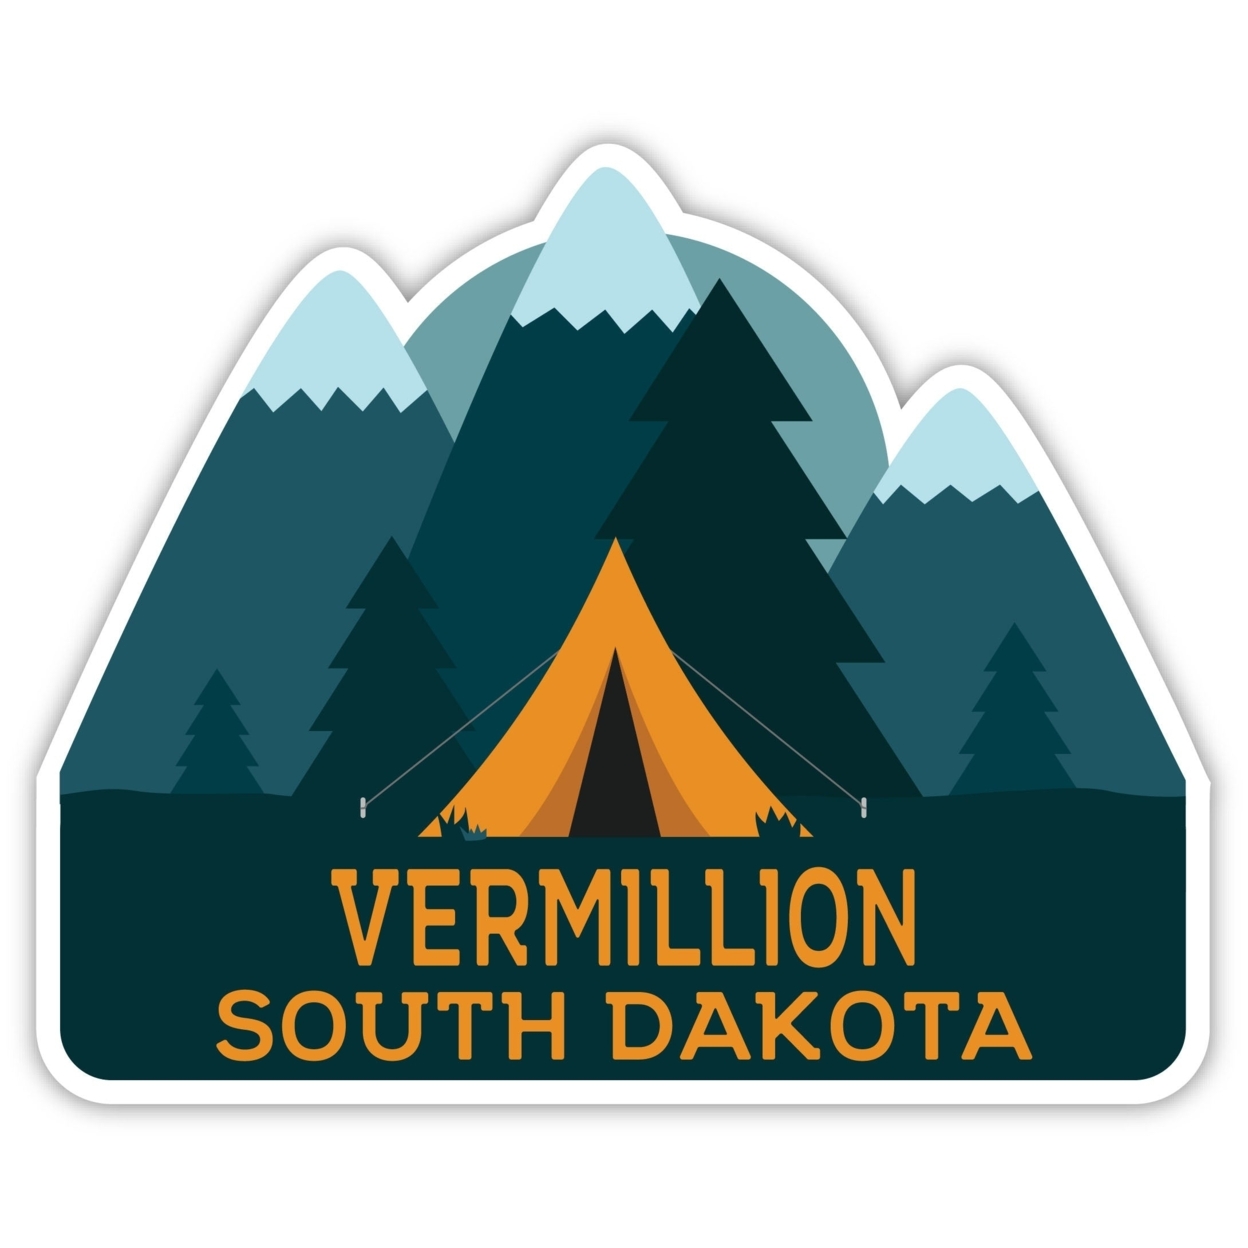 Vermillion South Dakota Souvenir Decorative Stickers (Choose Theme And Size) - Single Unit, 2-Inch, Tent